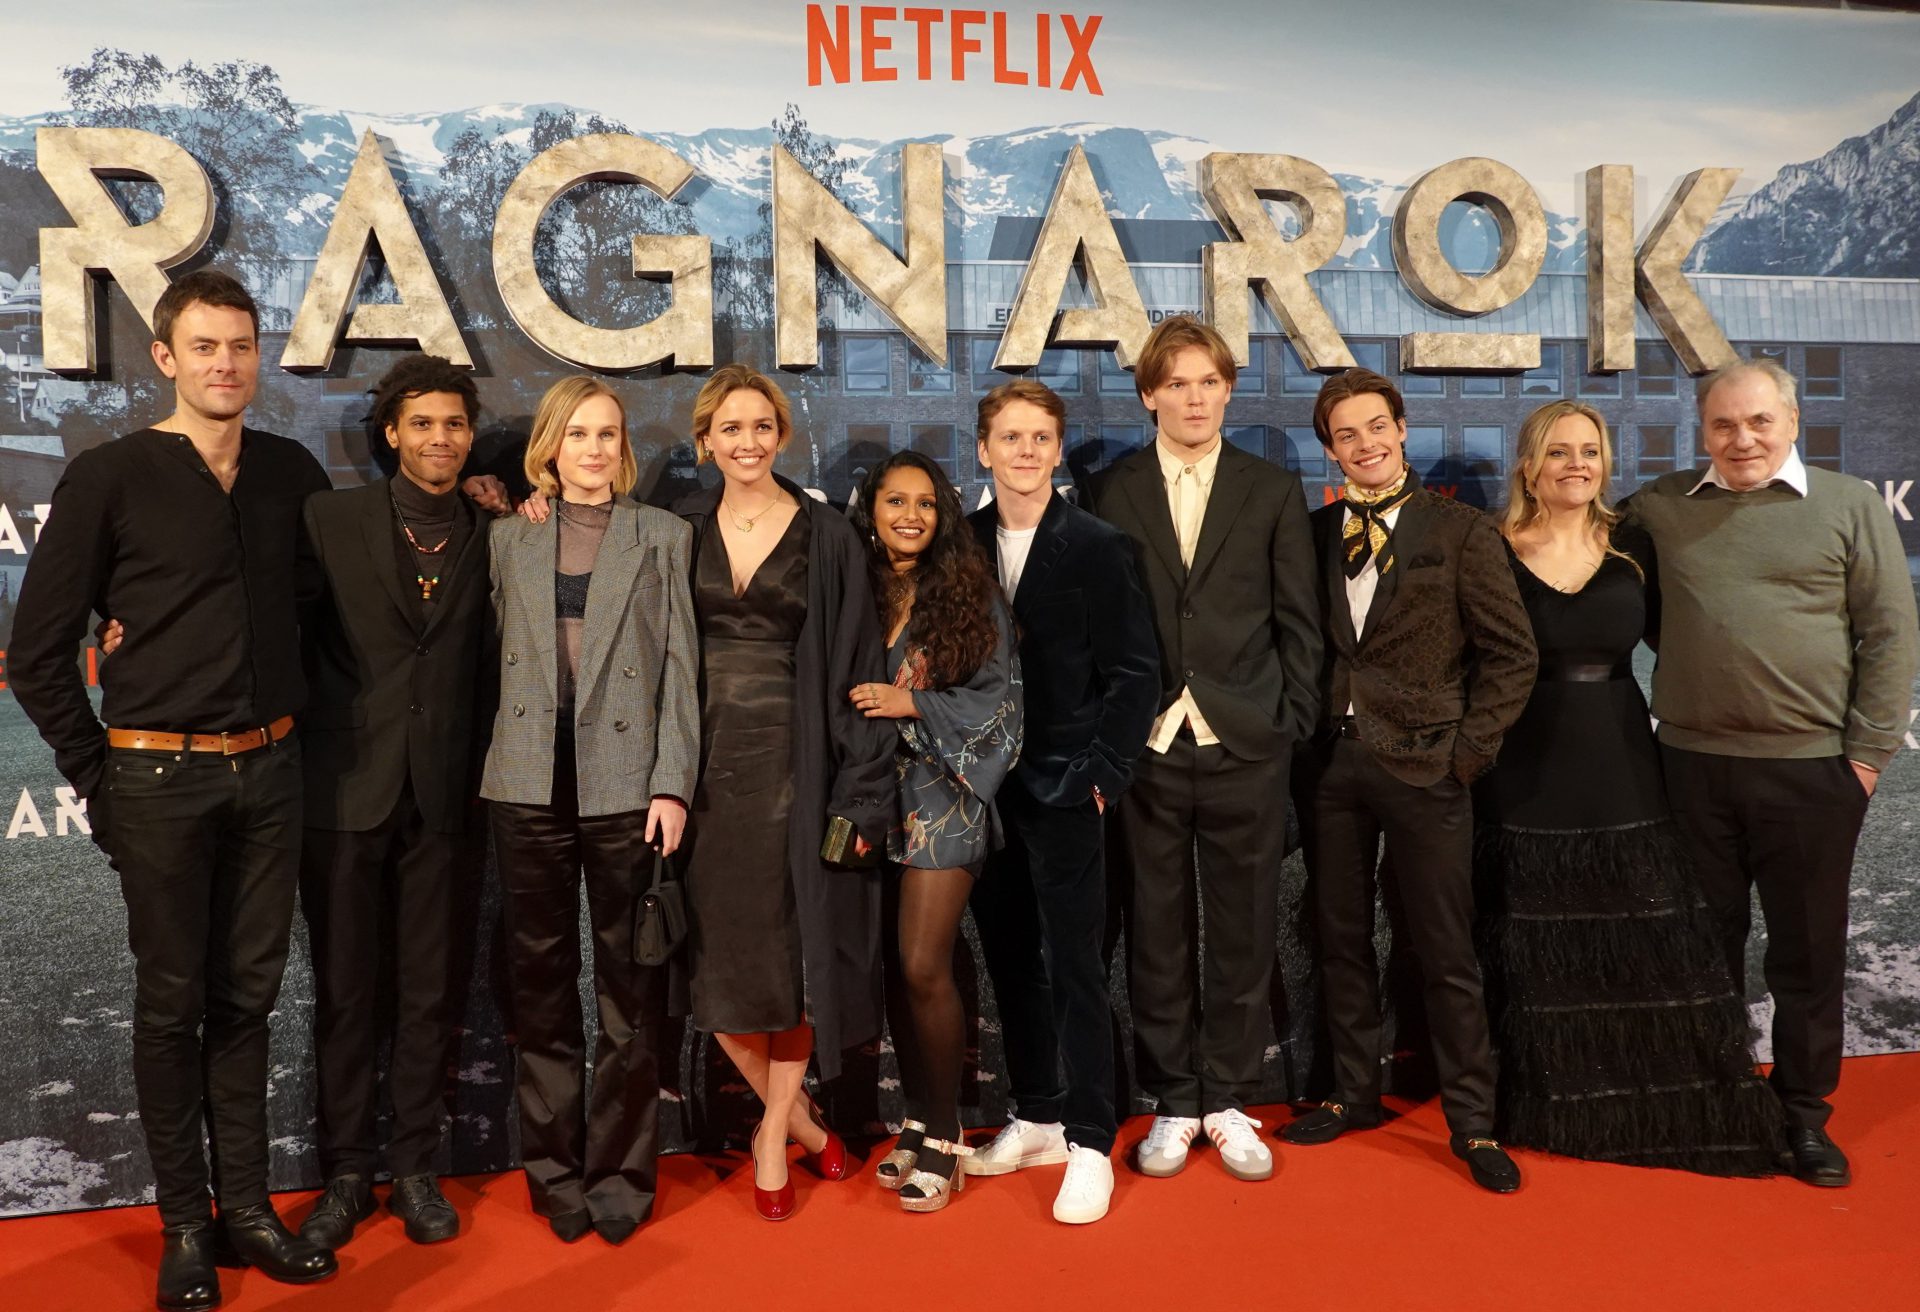 Premierefest for Netflix’ Ragnarok